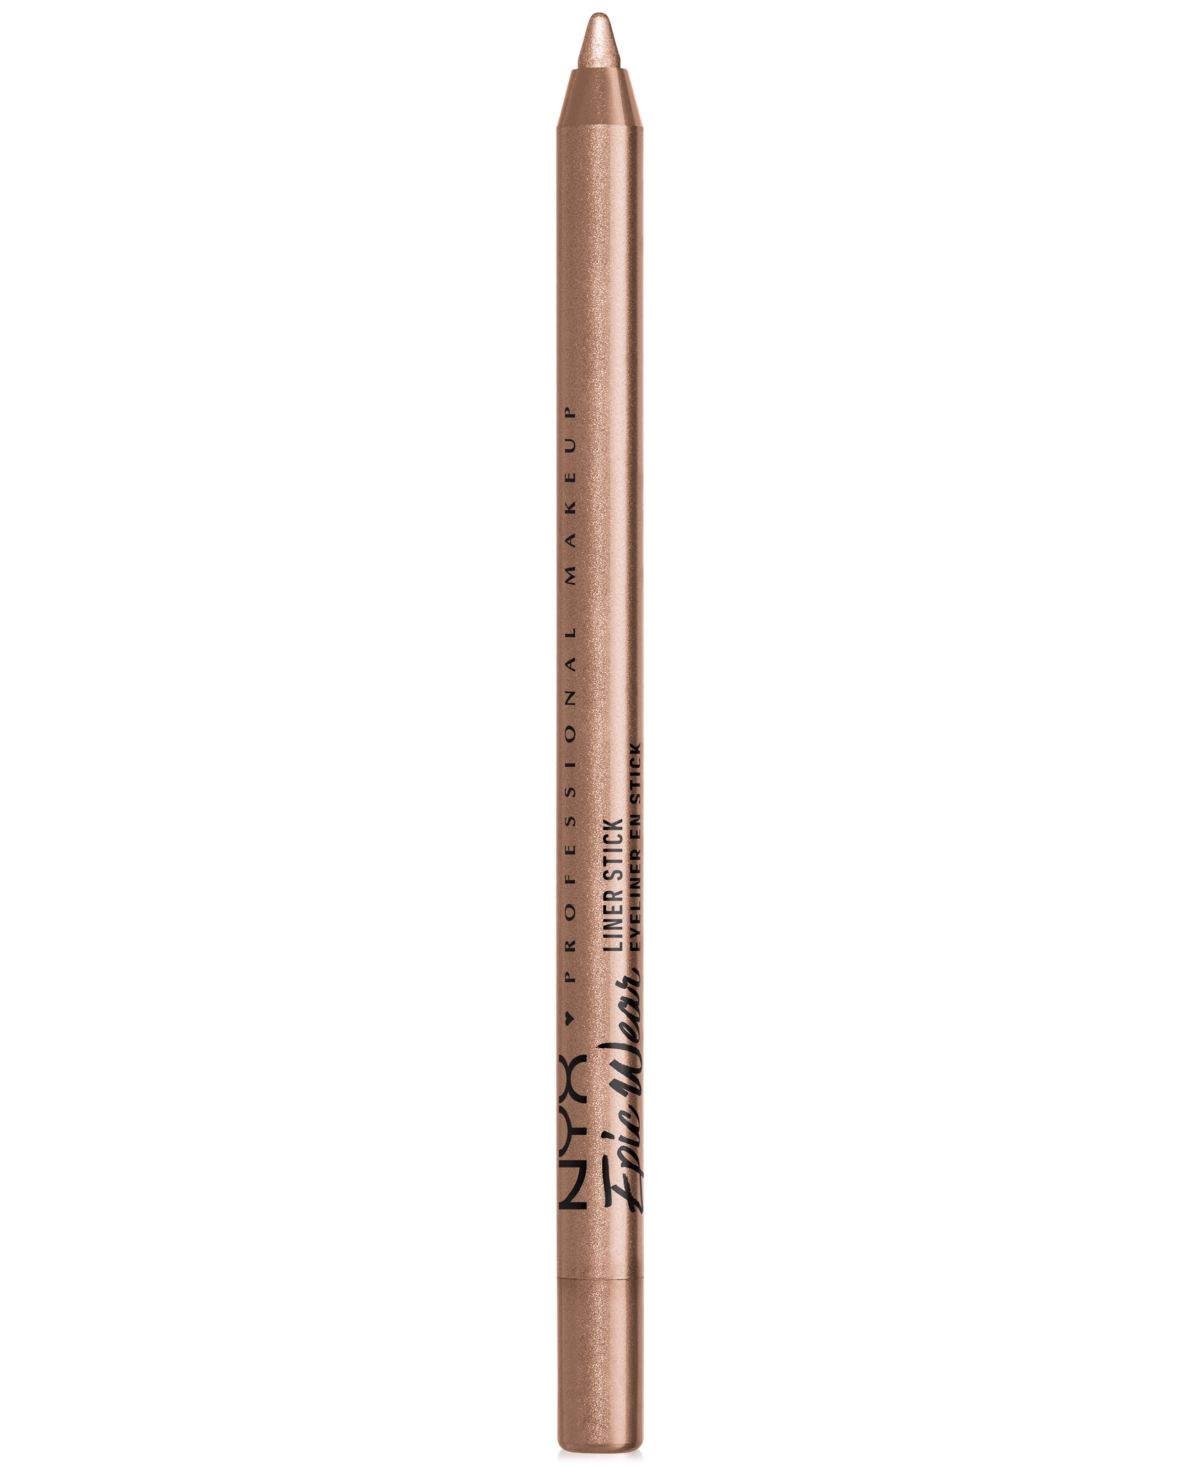 Epic Wear Liner Stick Long Lasting Eyeliner Pencil - Burnt Sienna